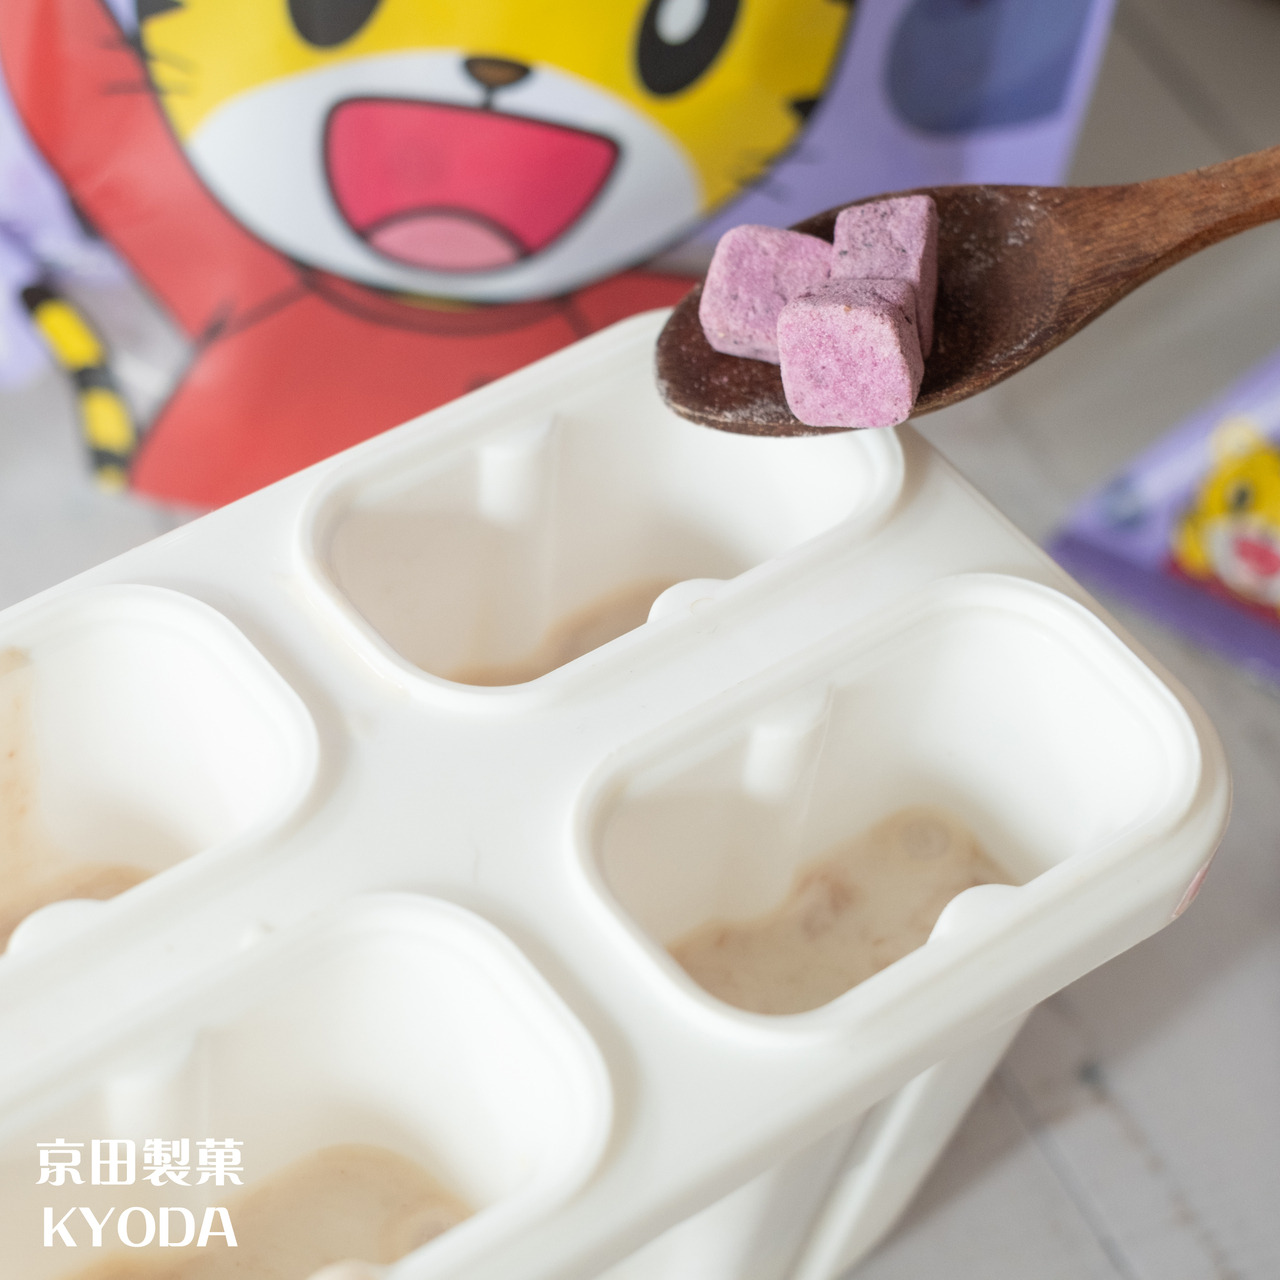 京田教你創意吃 巧虎寶寶乳酸菌優格餅乾 DIY用優格餅乾做夏日網美風漸層水果冰棒